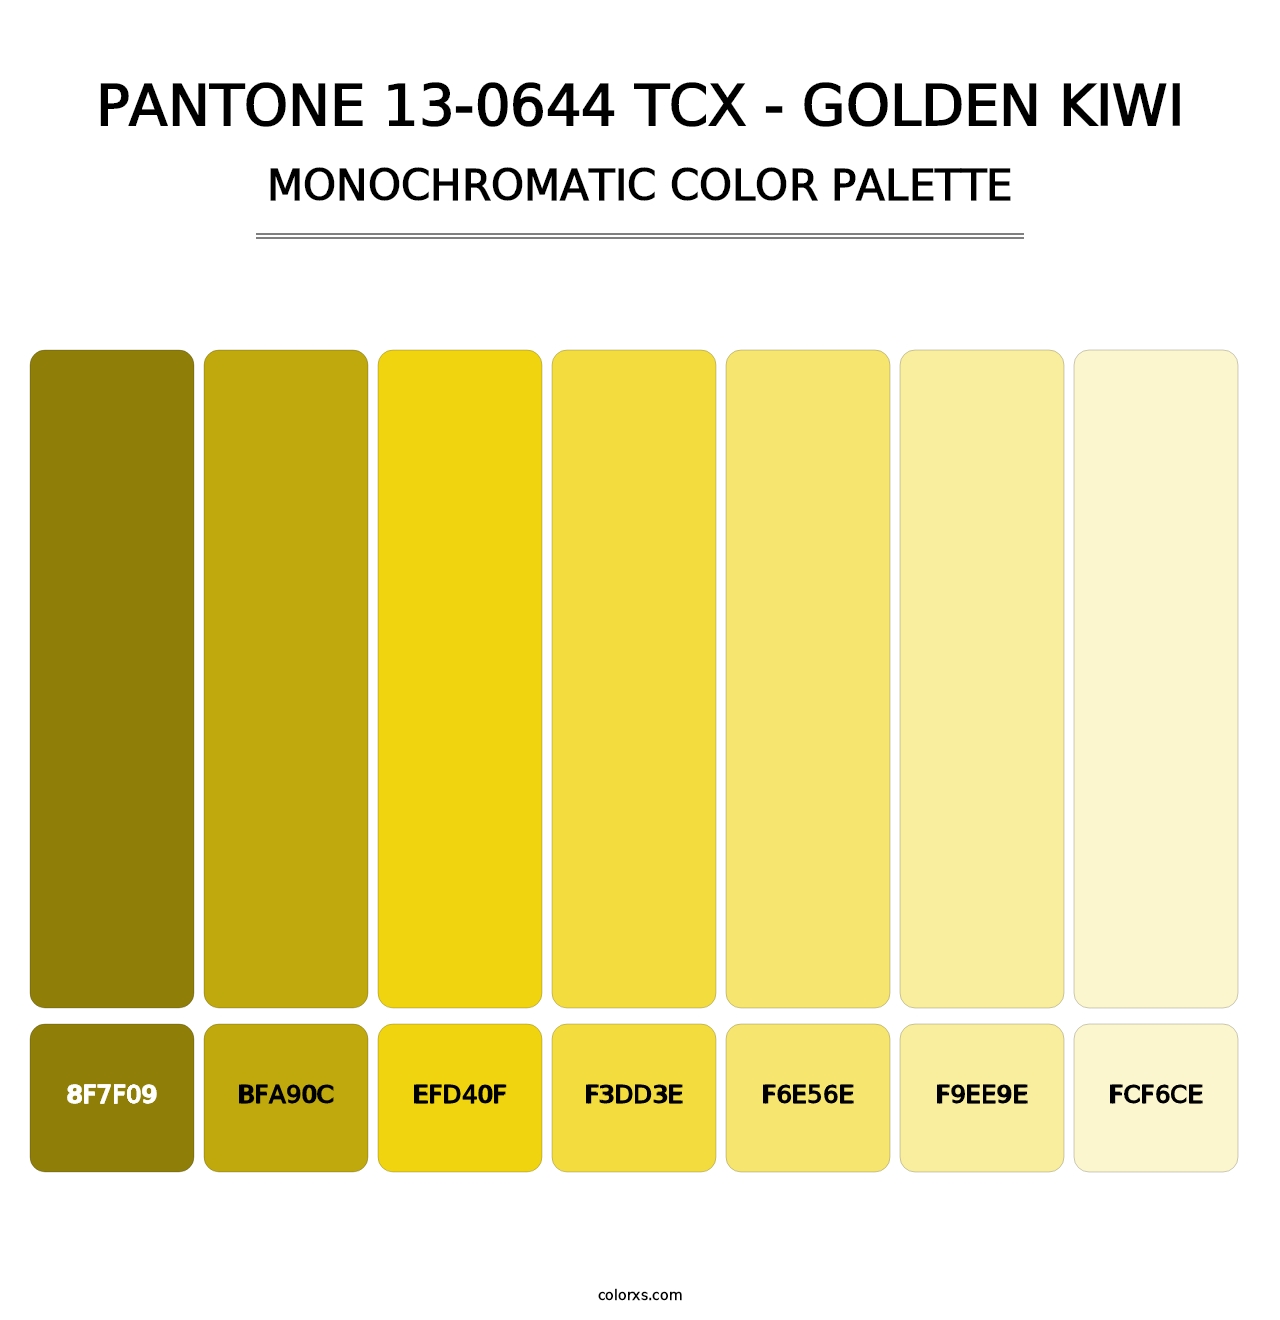 PANTONE 13-0644 TCX - Golden Kiwi - Monochromatic Color Palette